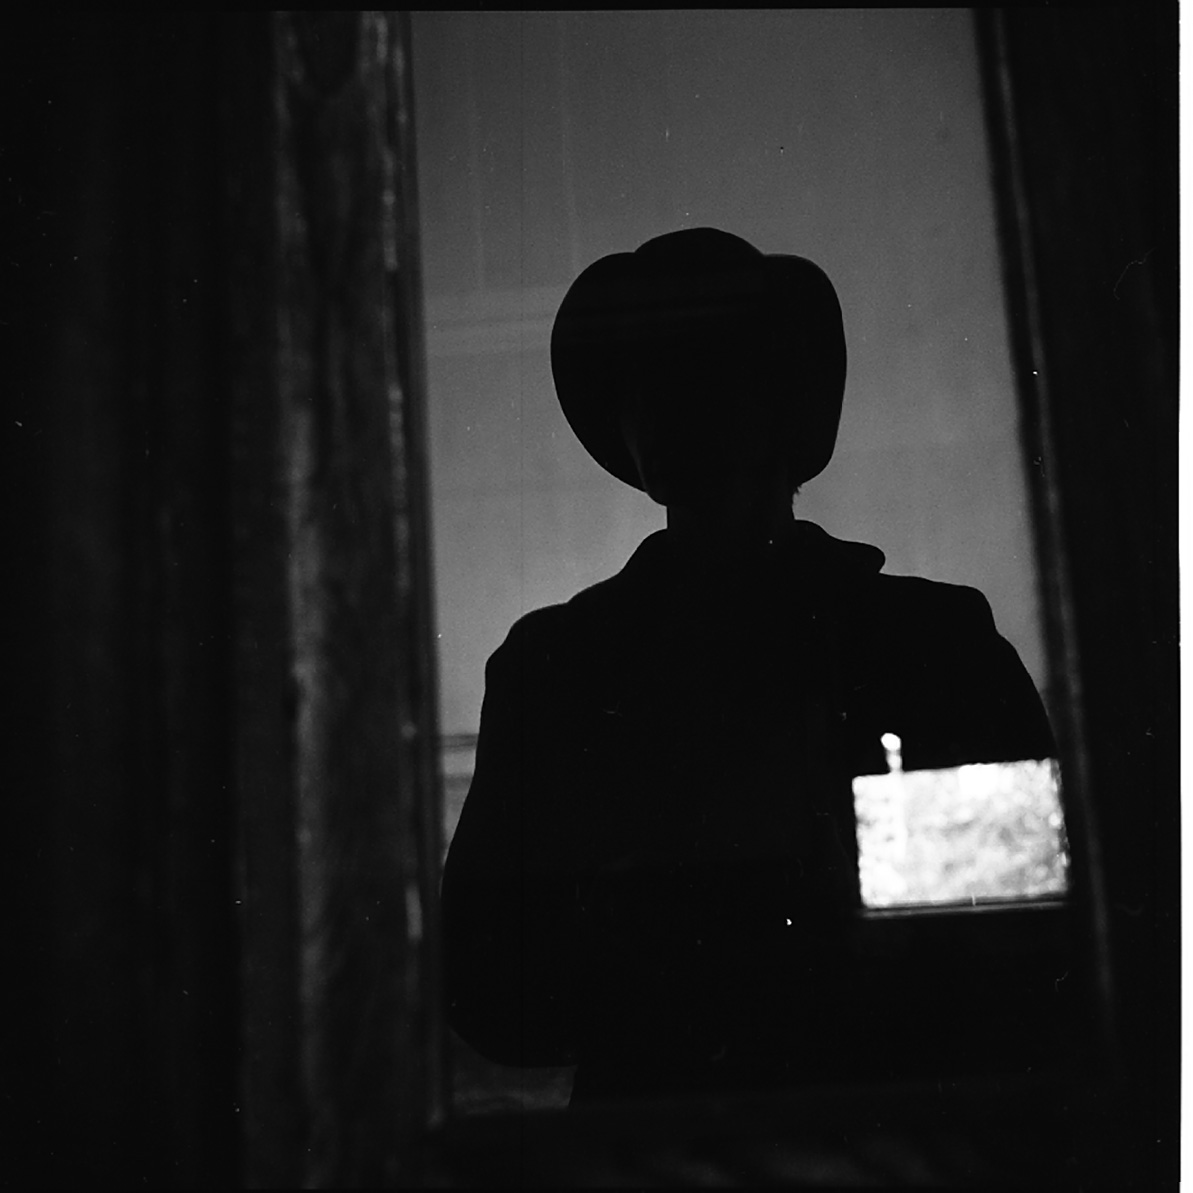 Vivian Maier, Self-portrait, Vivian's Silhouette, Chicago, 1973